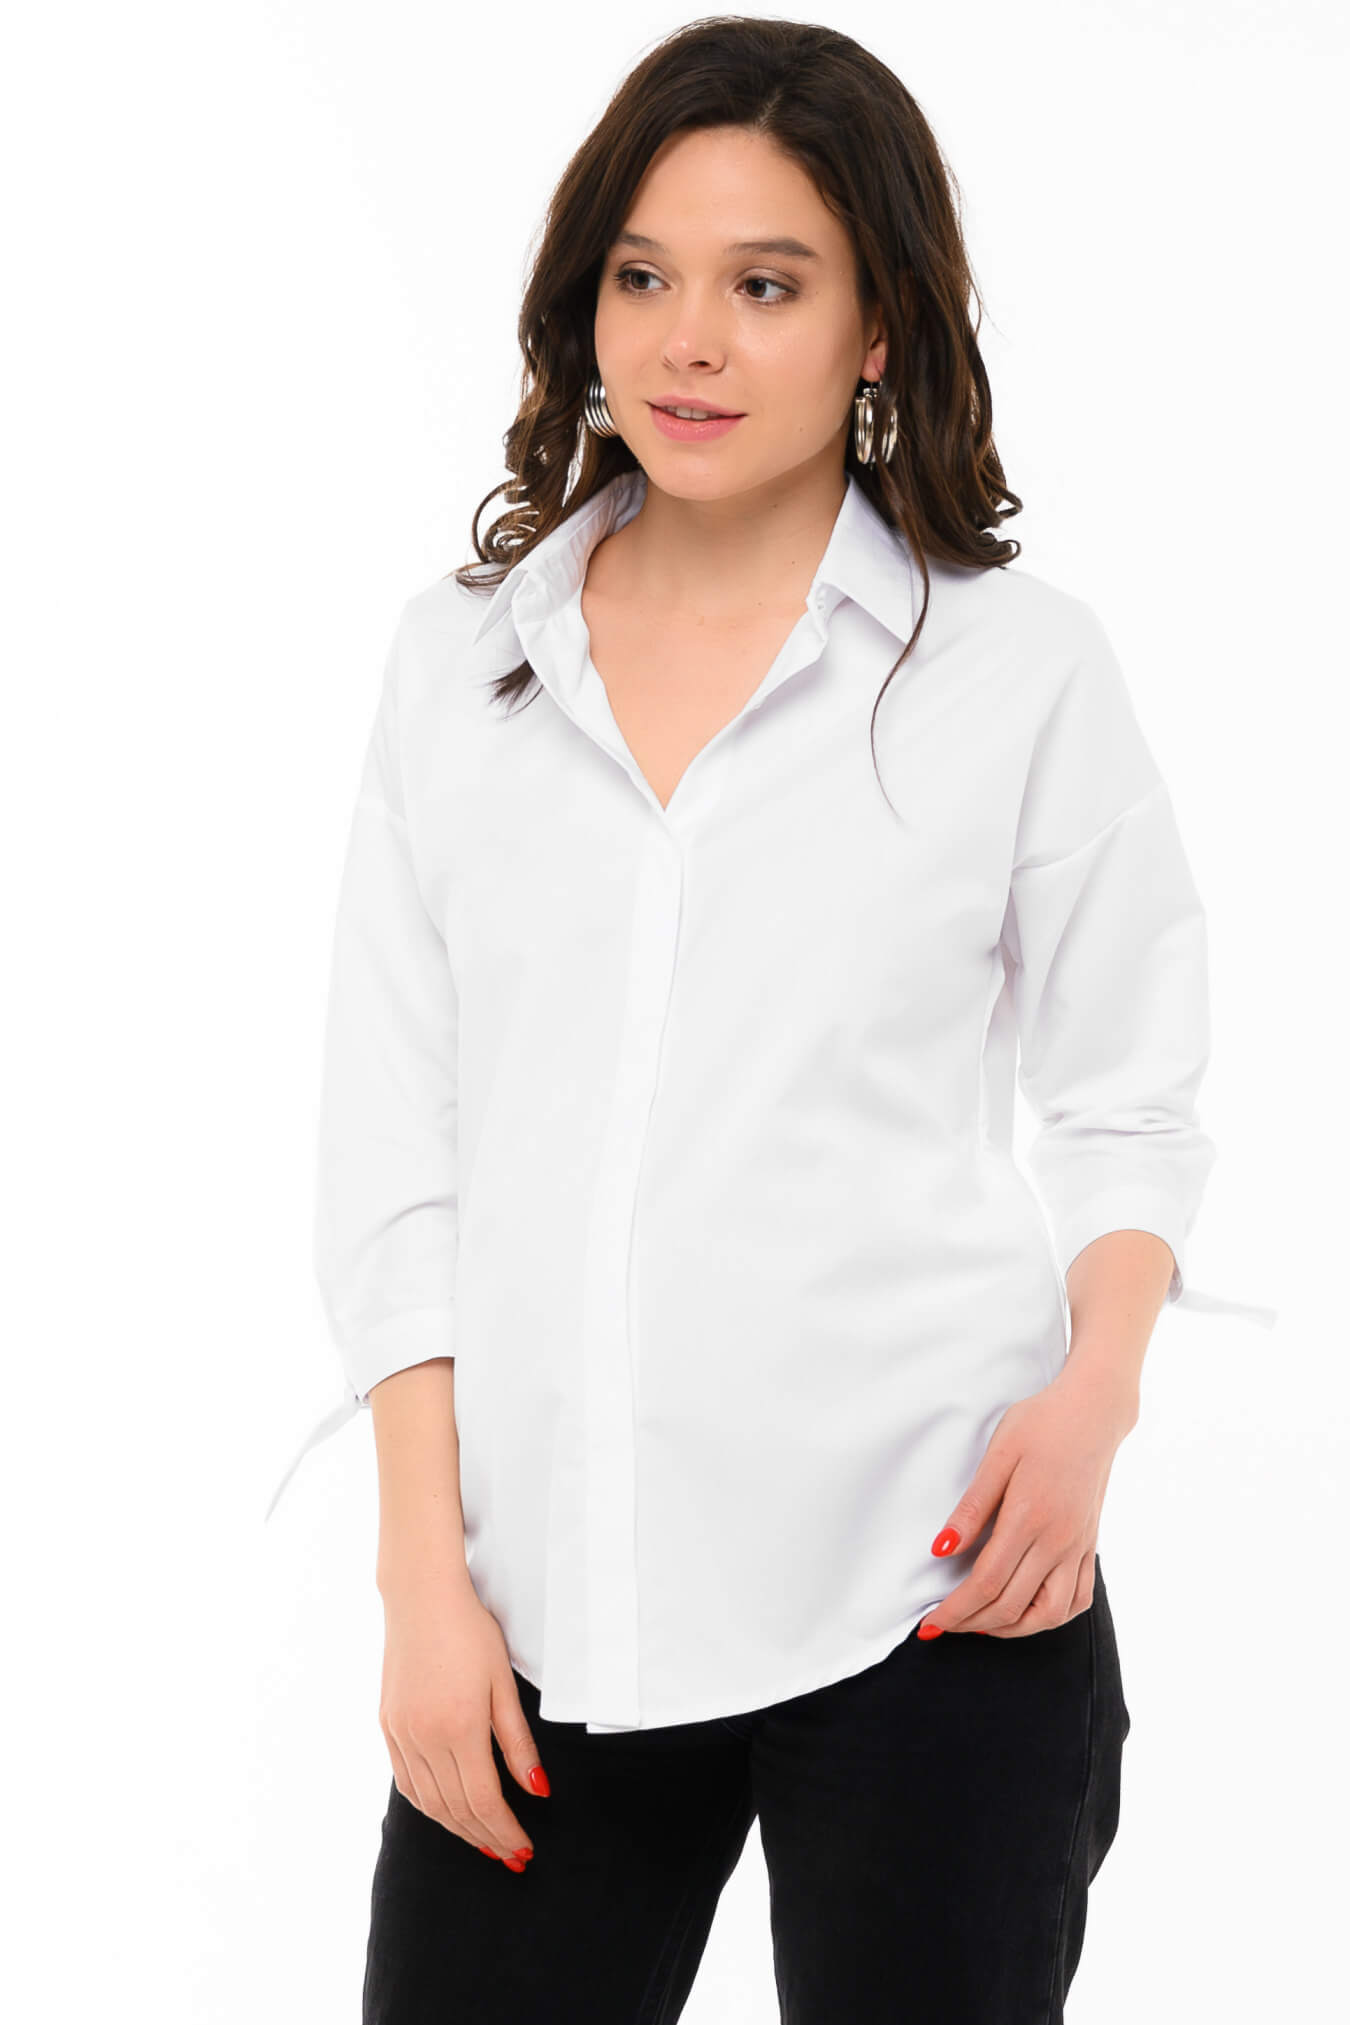 Рубашка для беременных женщин белая классическая офисная блуза блузка женская будущих мам / Happy Moms